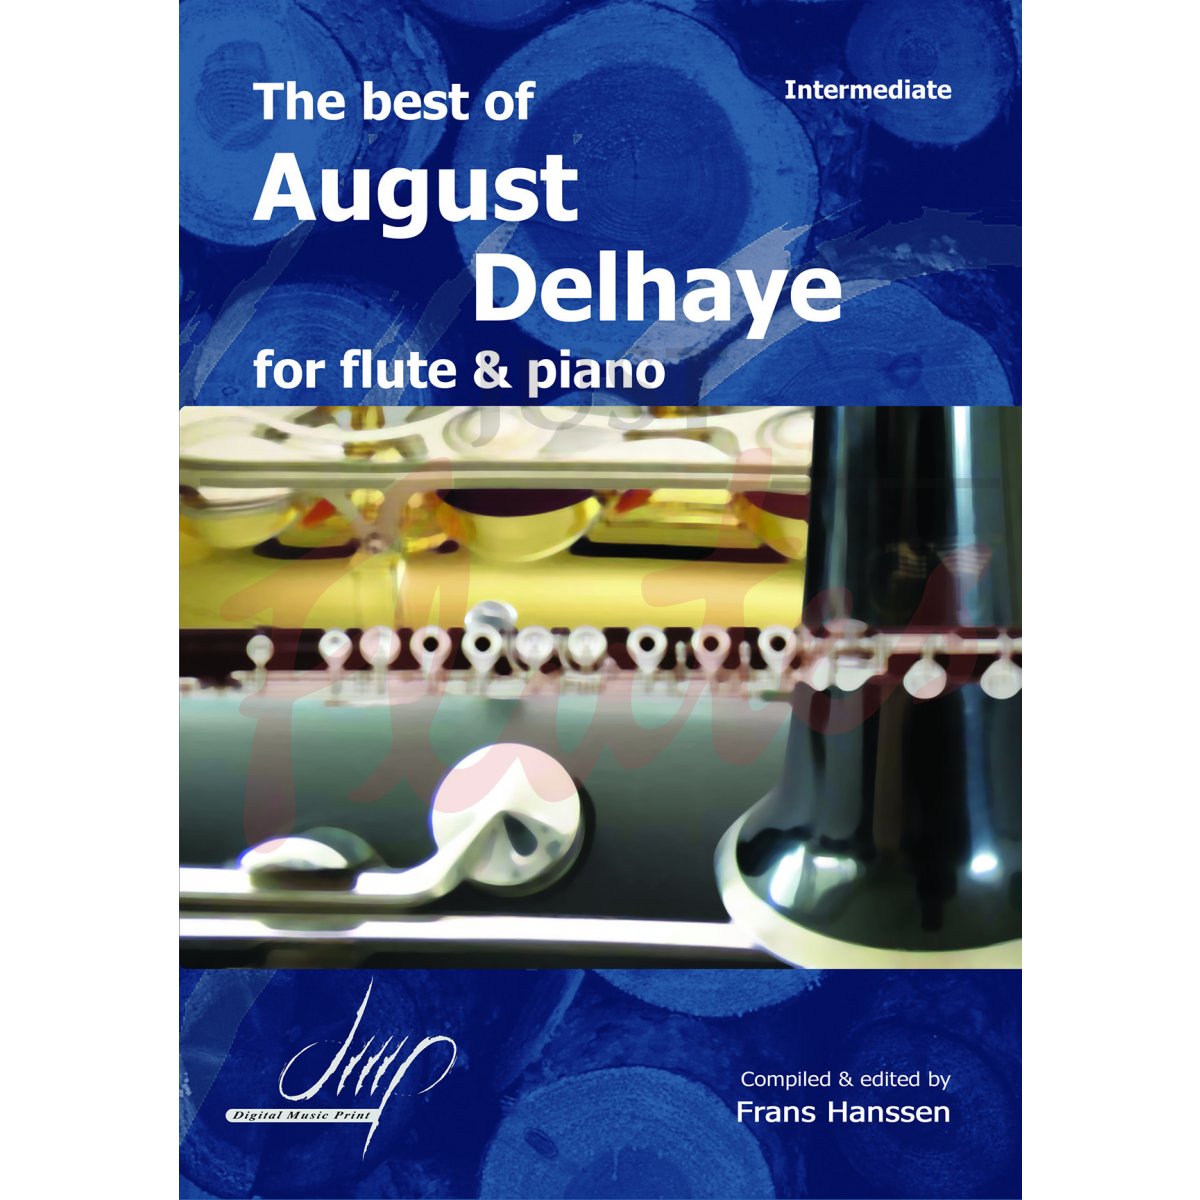 the best of August Delhaye